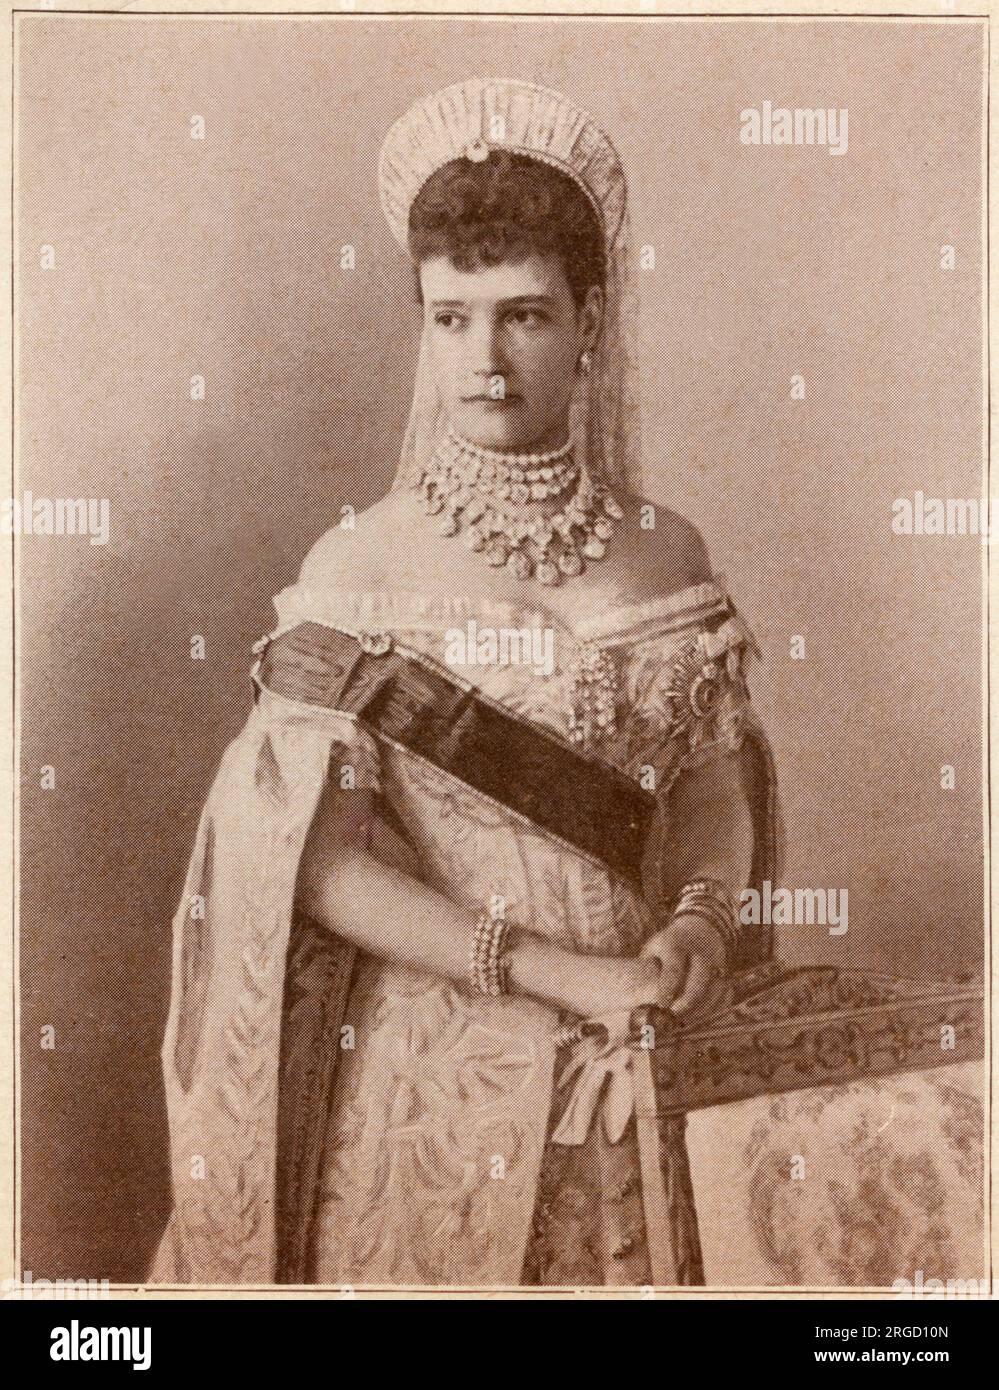 María Feodorovna (1847-1928), conocida antes de su matrimonio como la princesa Dagmar de Dinamarca - Emperatriz de Rusia de 1881 a 1894 como esposa del emperador Alejandro III Foto de stock